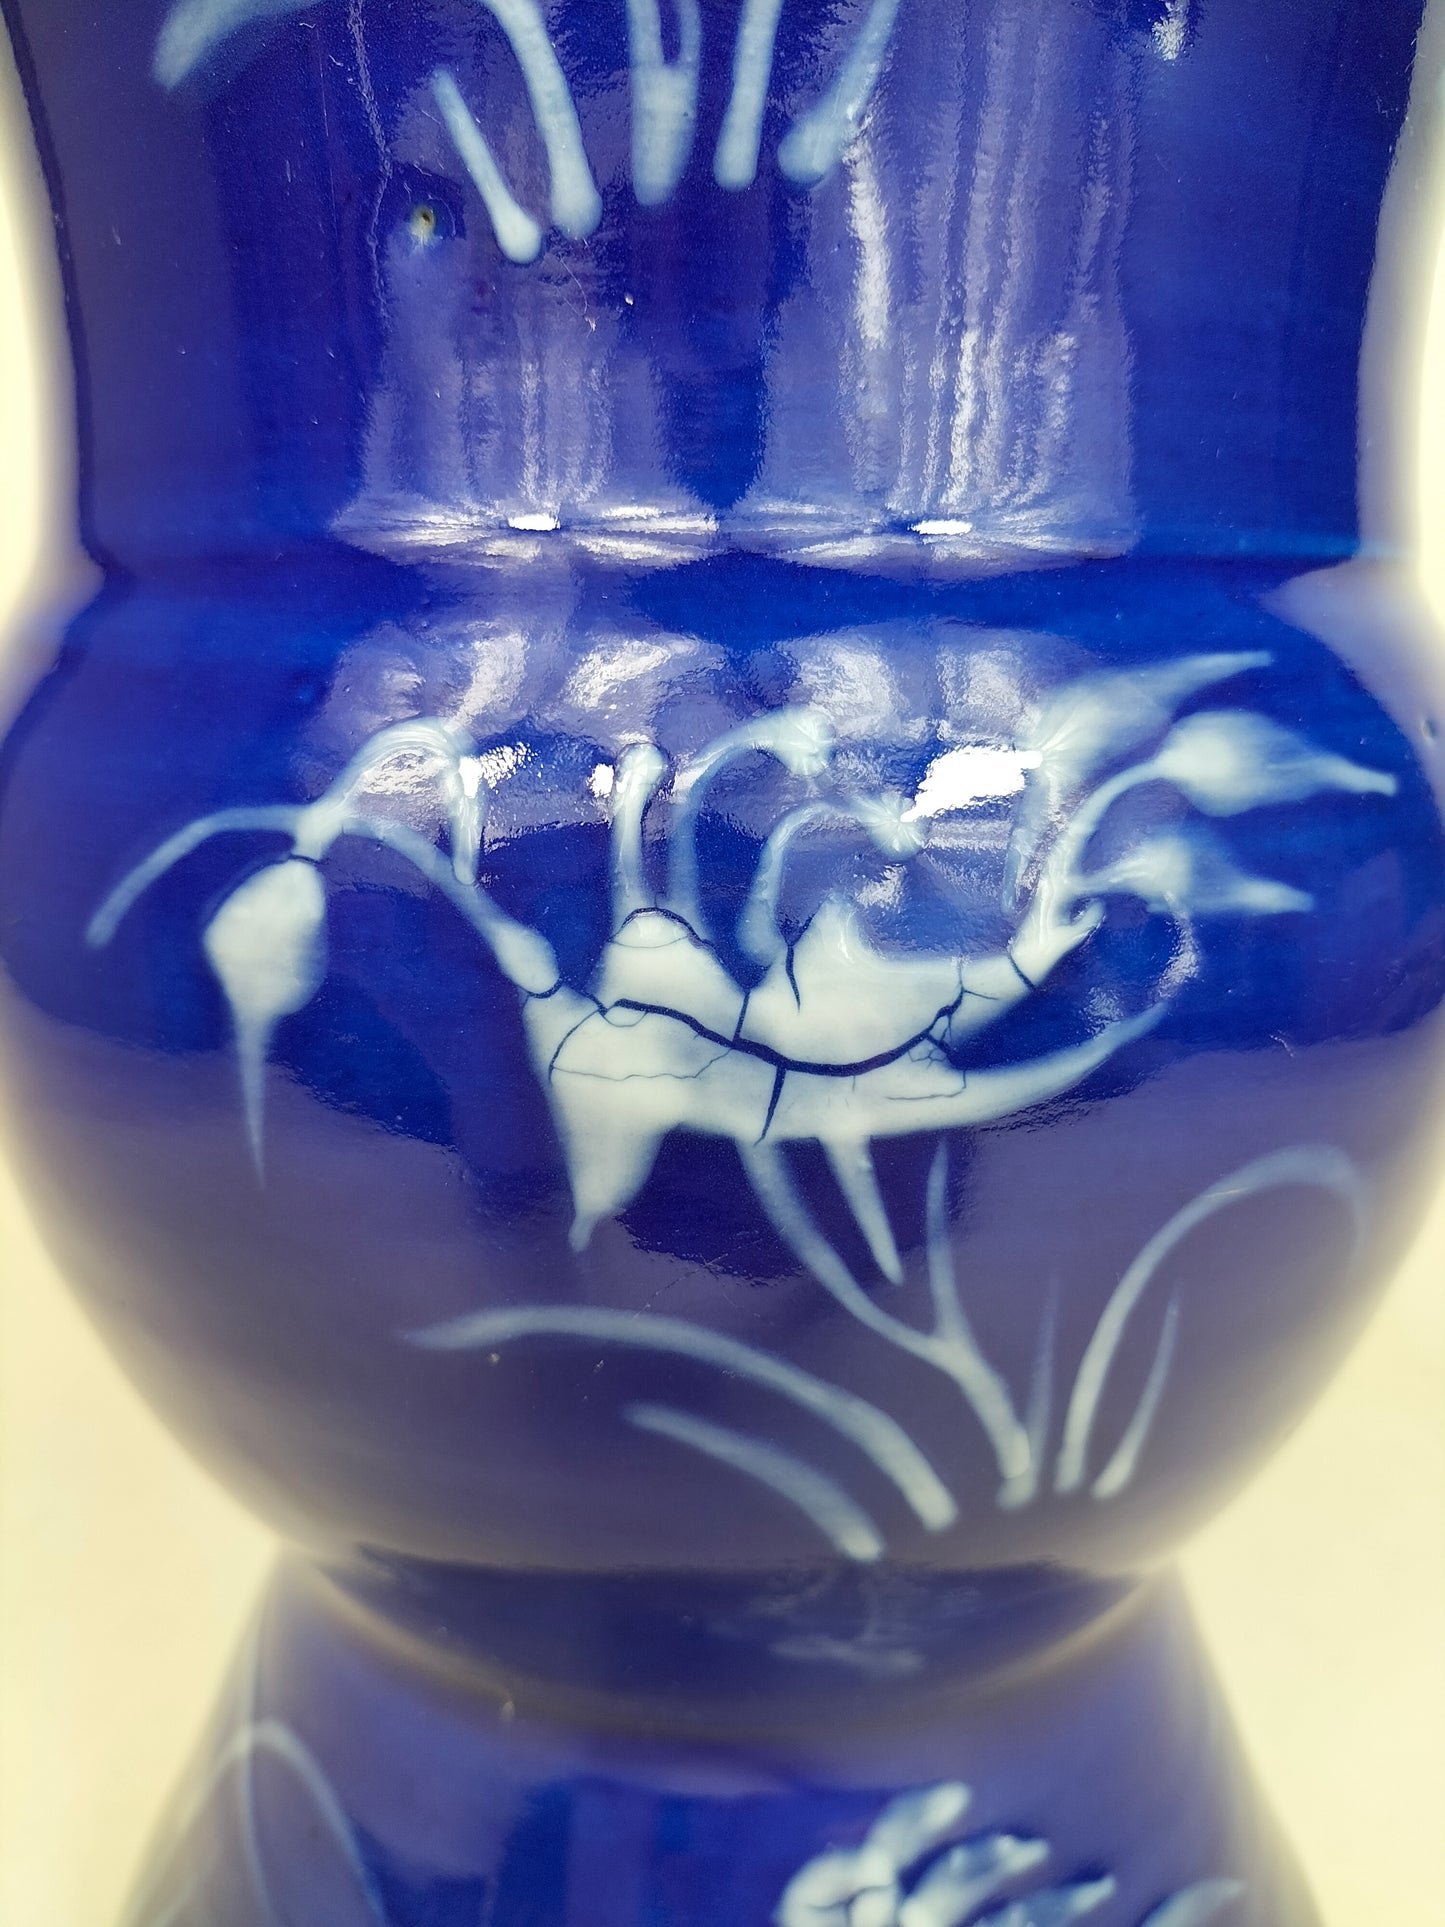 Antigo vaso chinês em pó azul gu decorado com flores // Dinastia Qing - século XIX